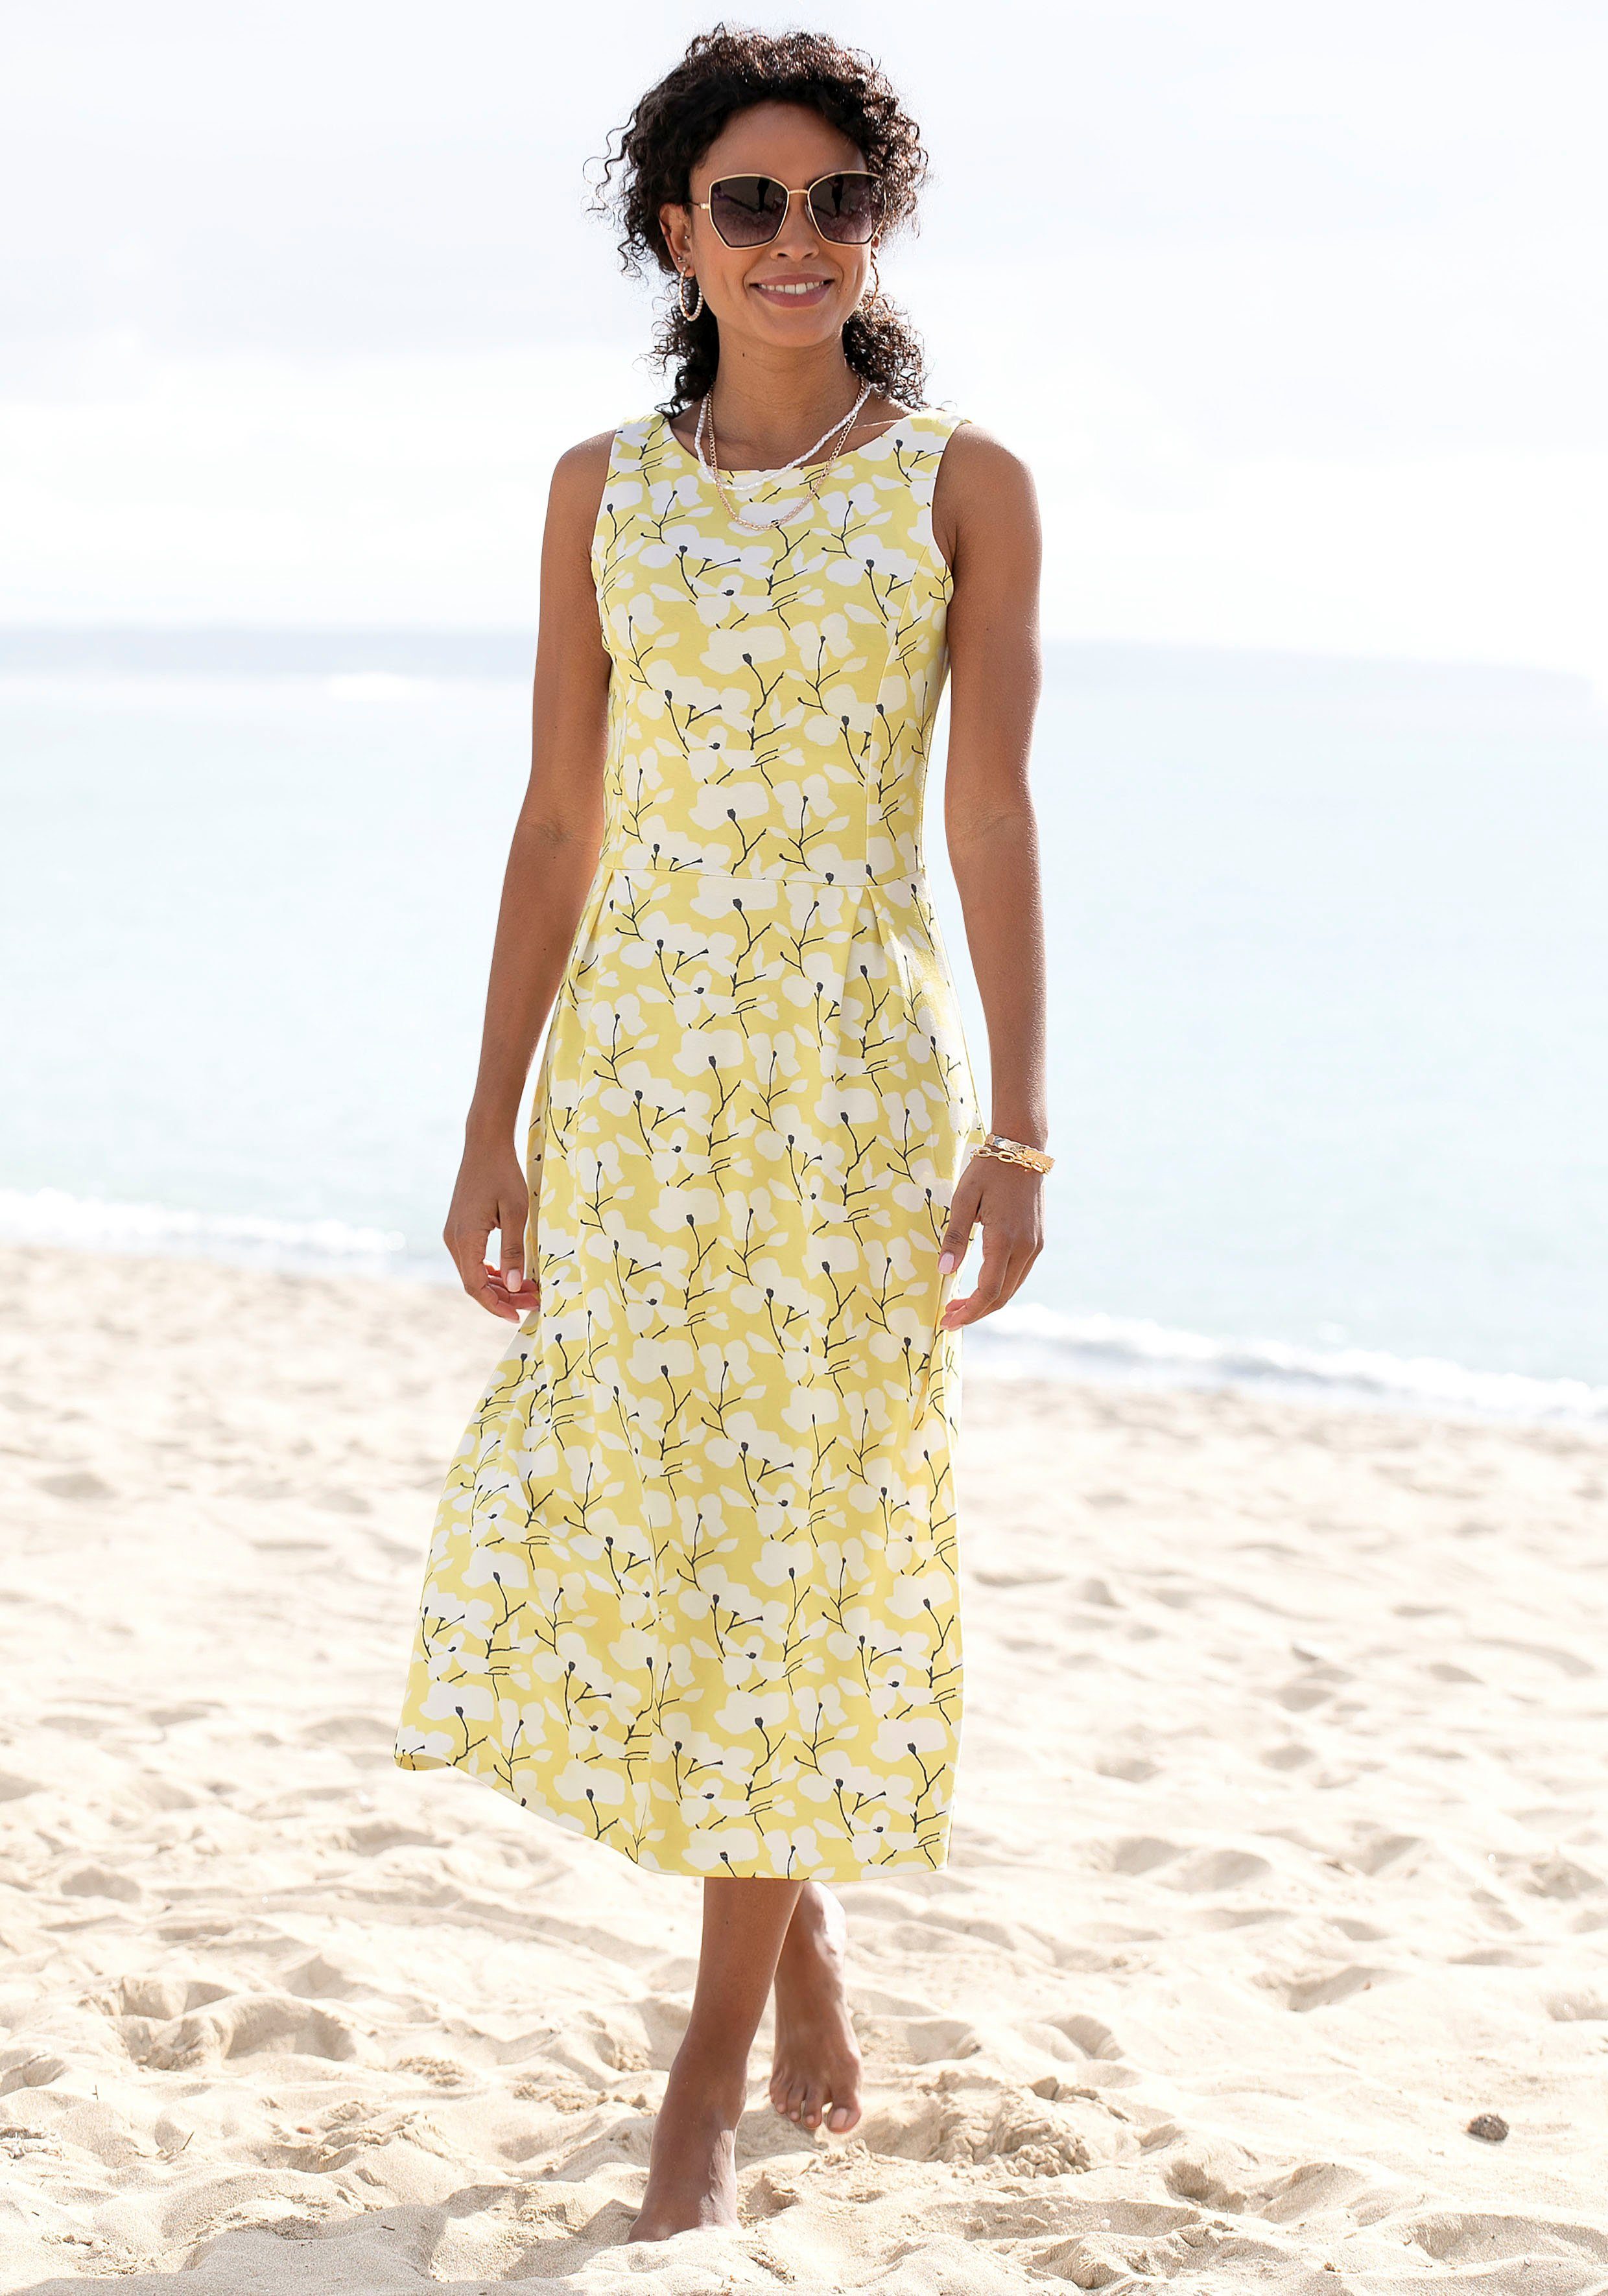 Blumendruck, Beachtime Strandmode, gelb-creme-bedruckt Strandbekleidung Sommerkleid mit